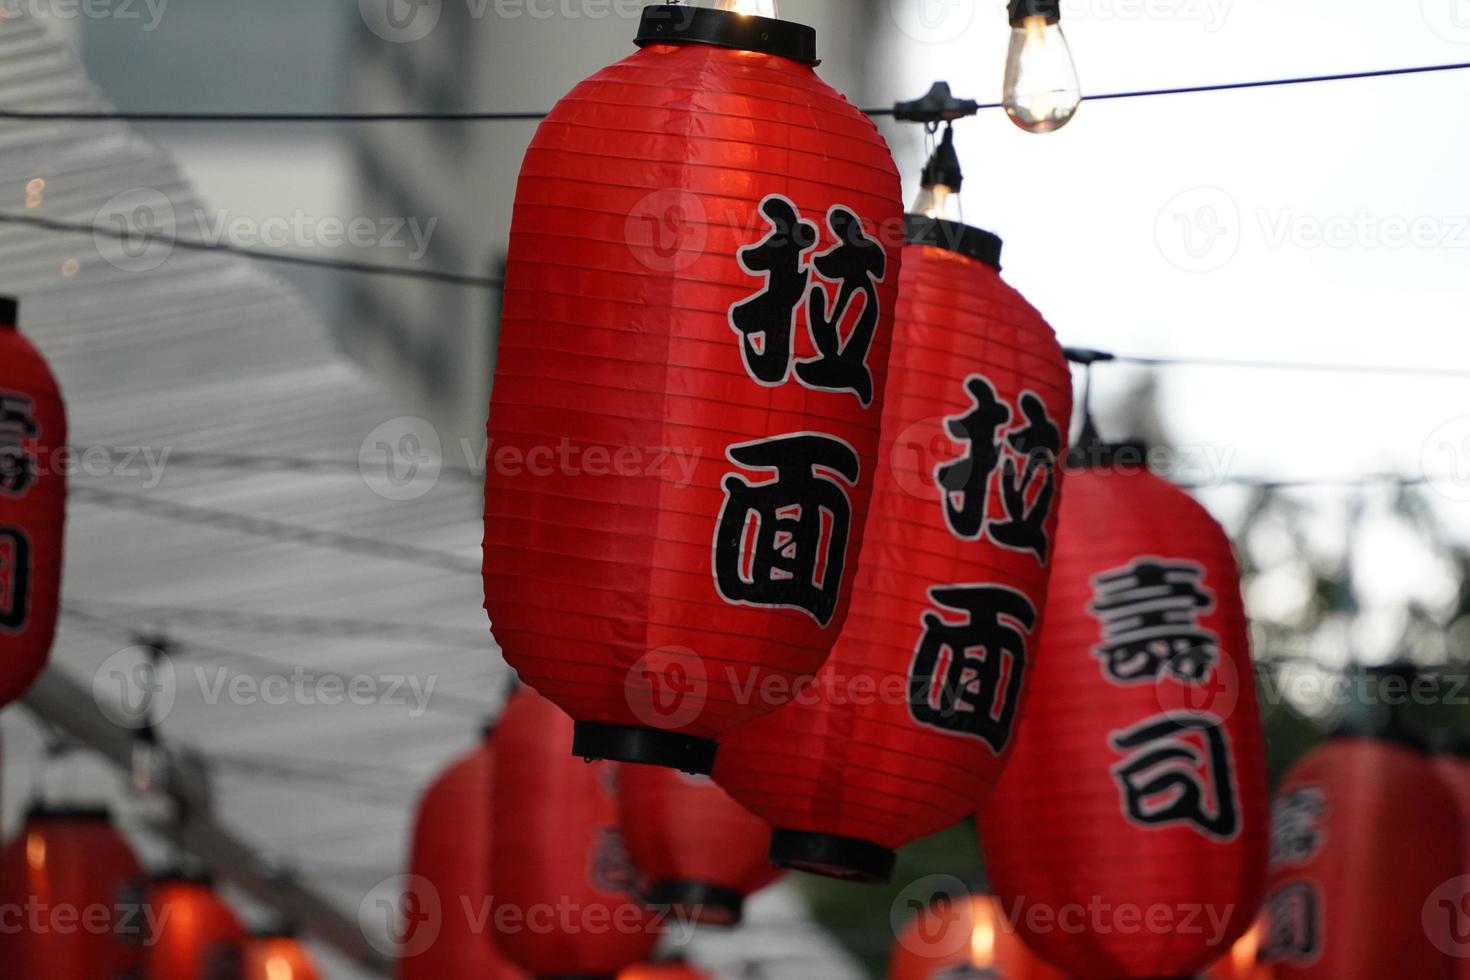 lanternes chinoises du quartier chinois de new york photo